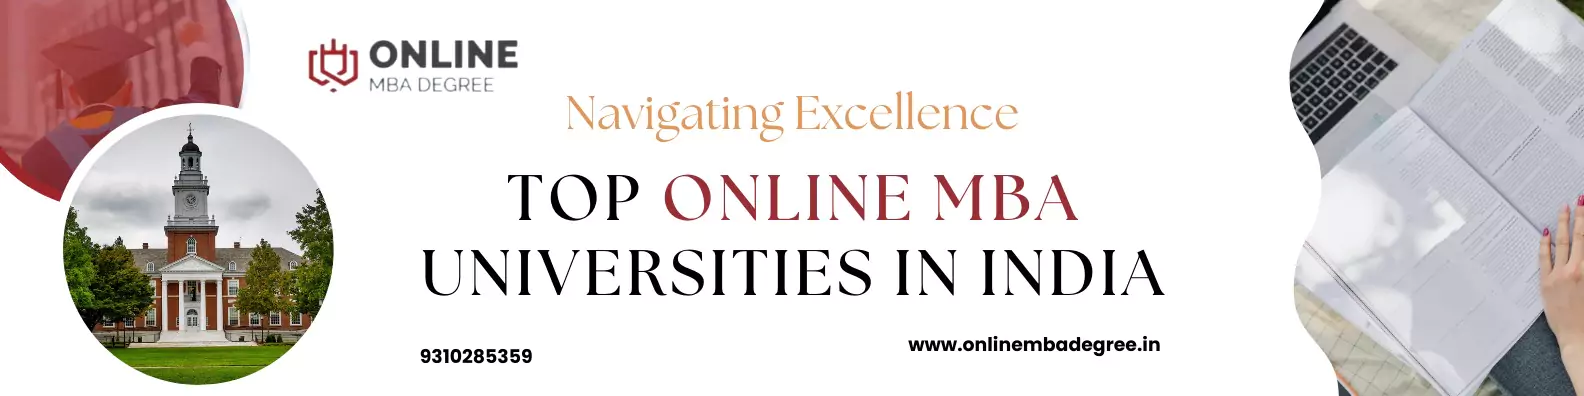 Top Online MBA Universities In India